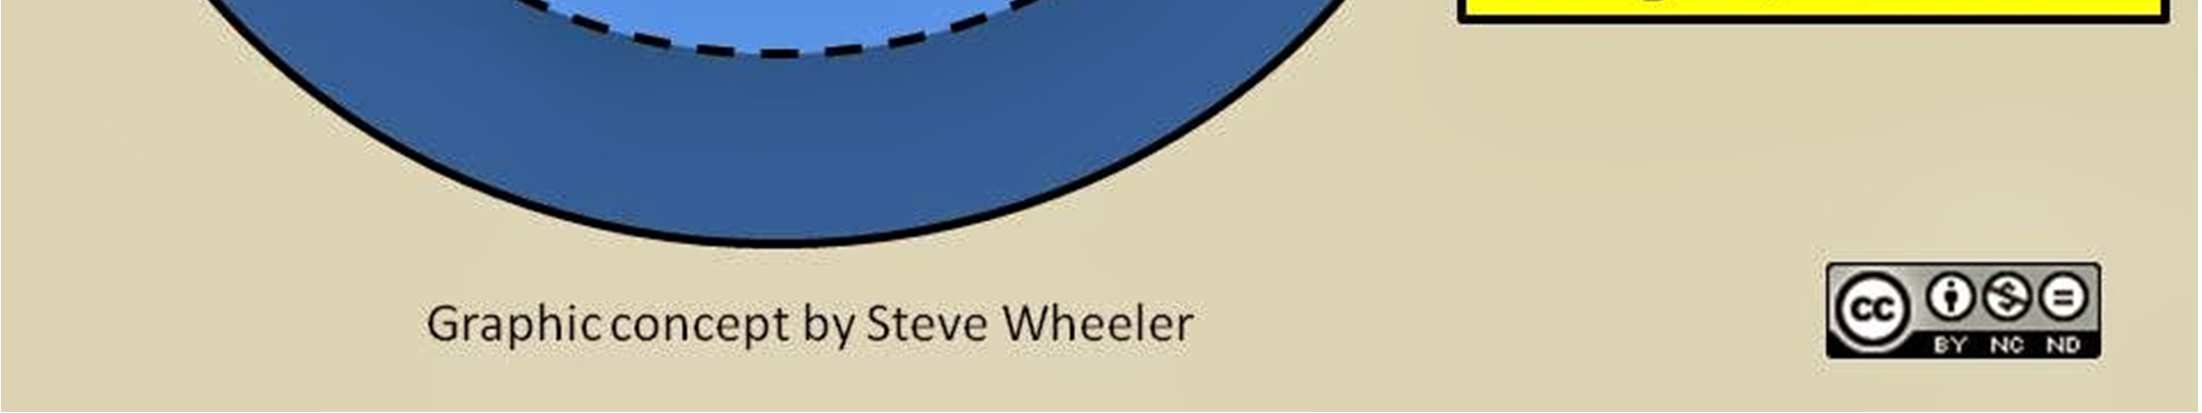 http://steve-wheeler.blogspot.